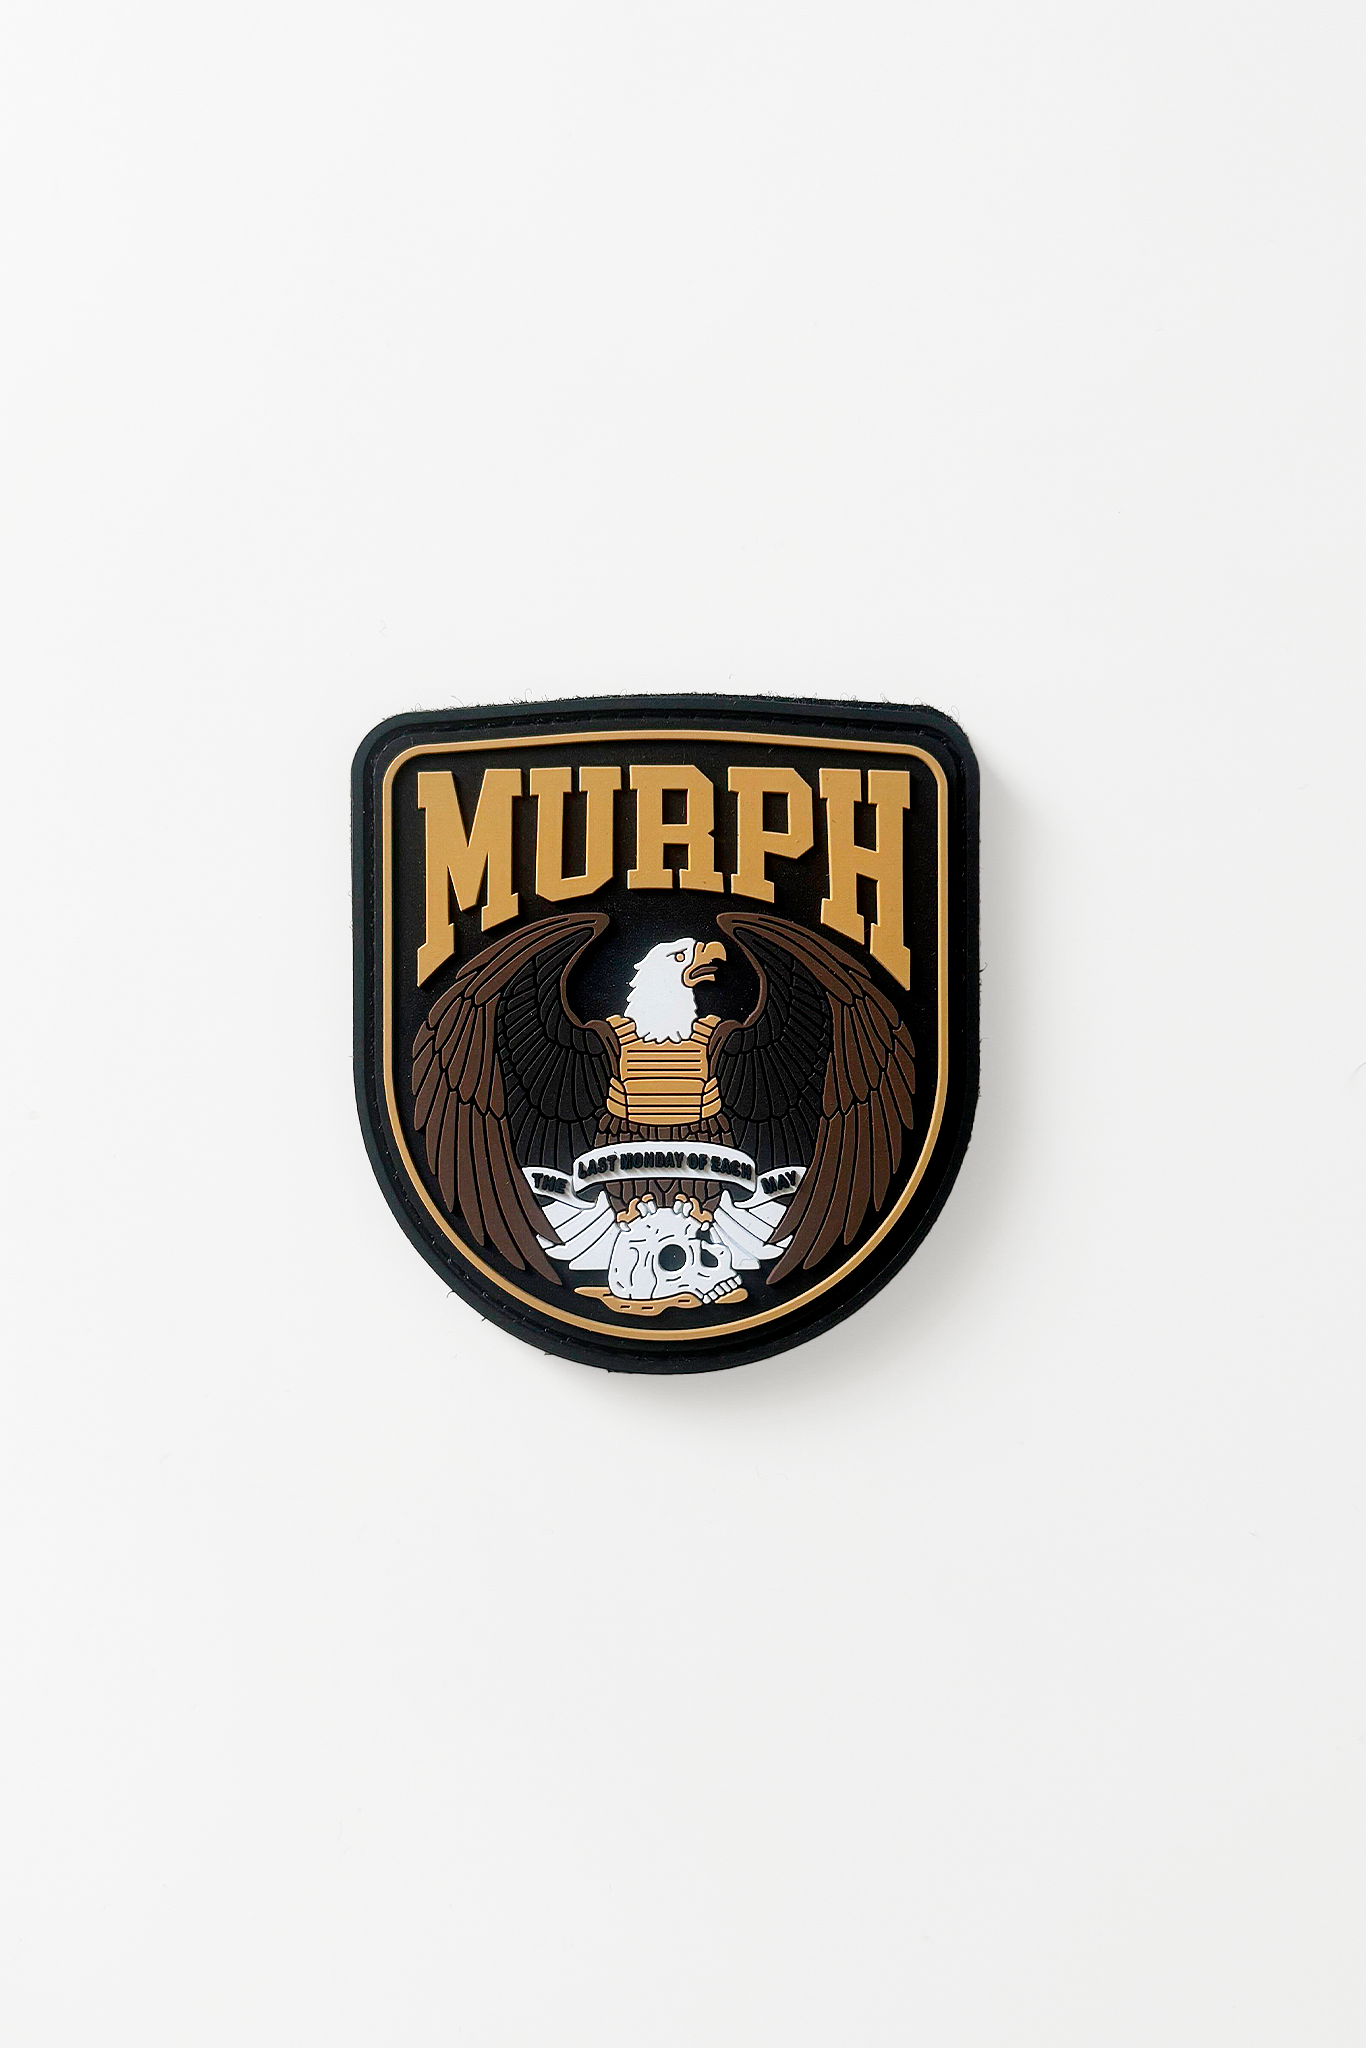 Murph Day Ed. 24 - Velcro Patch